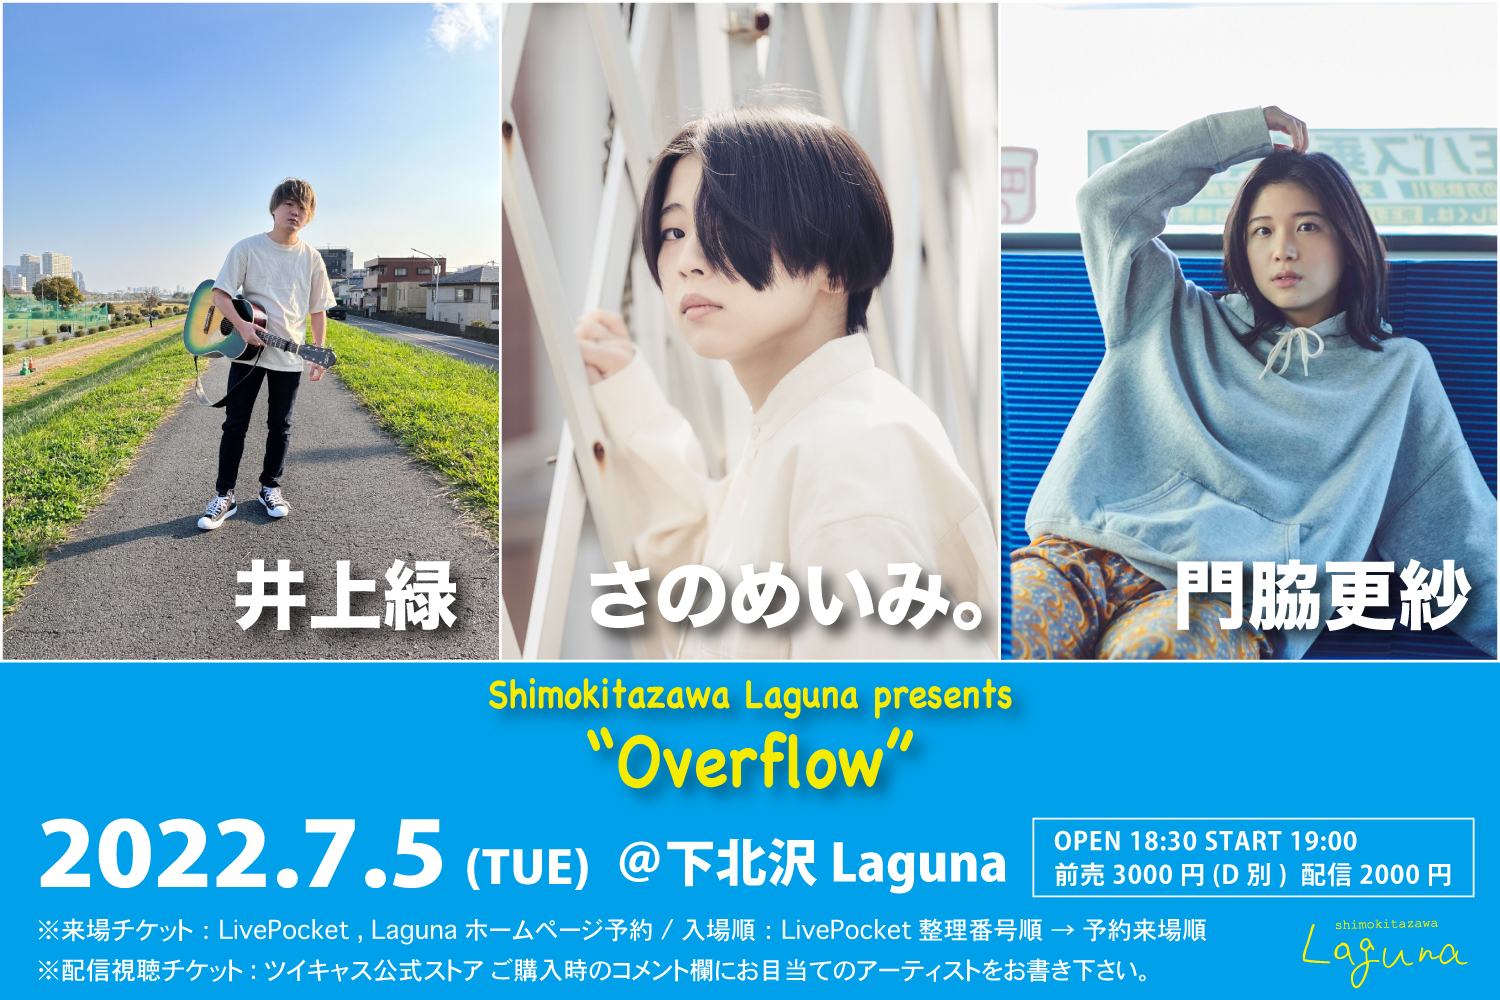 Laguna 14th Anniversary <Overflow>